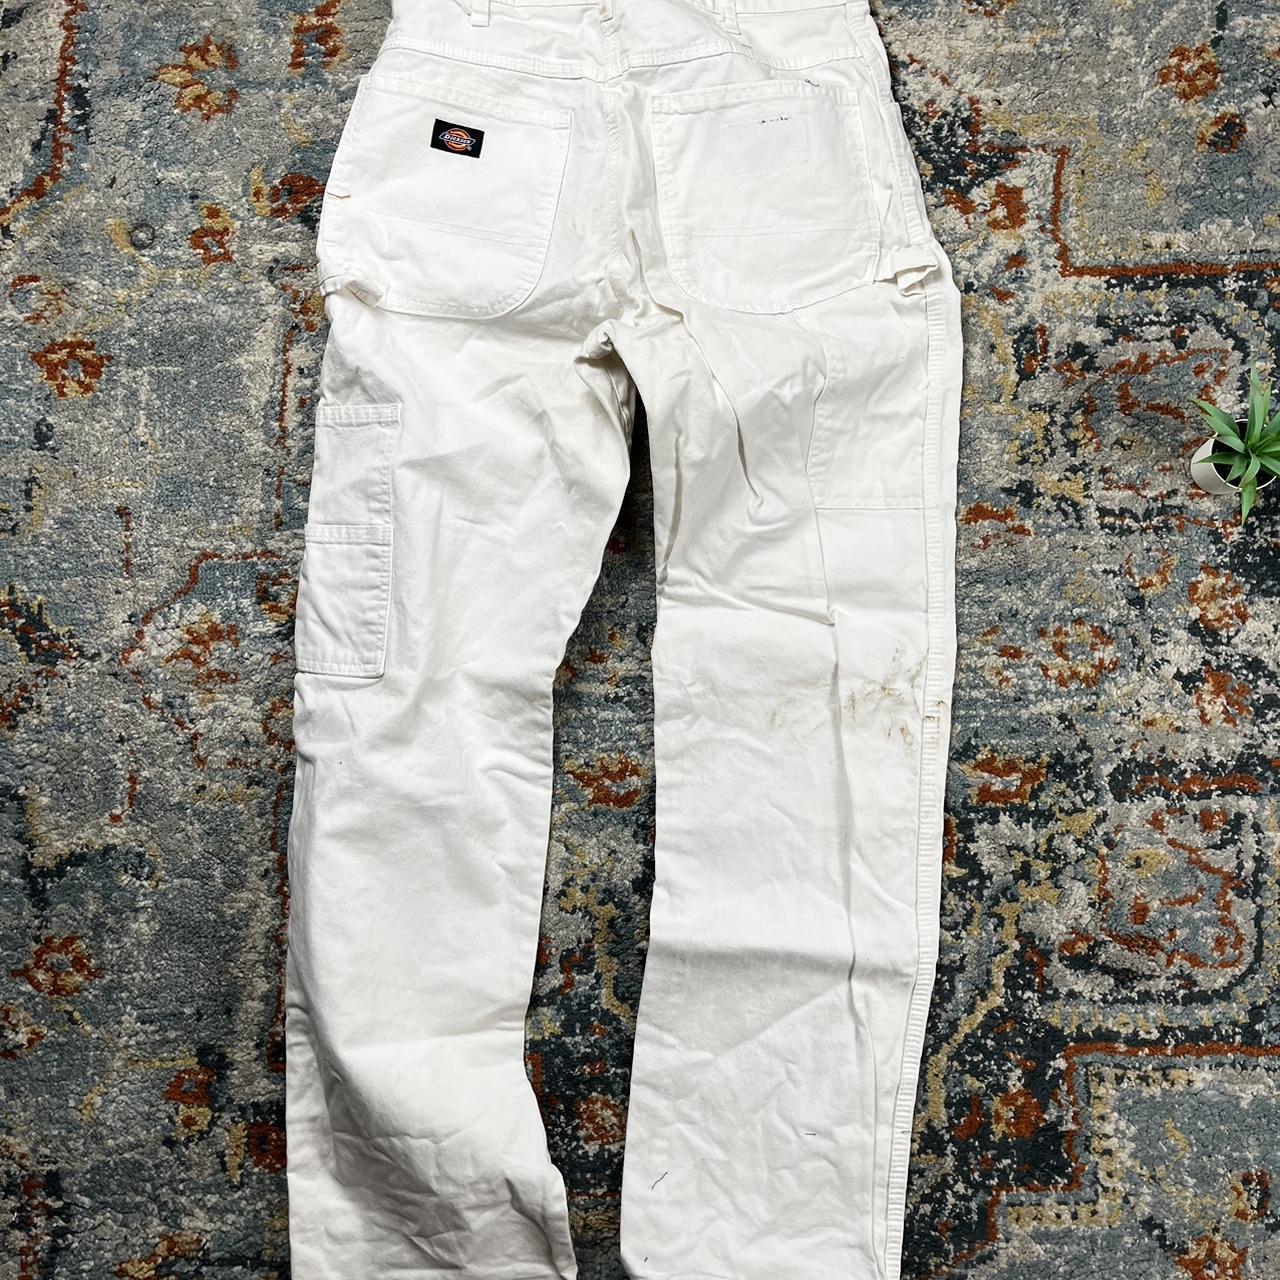 Vintage Dickies White Work Pants W14 I33 Stain in... - Depop